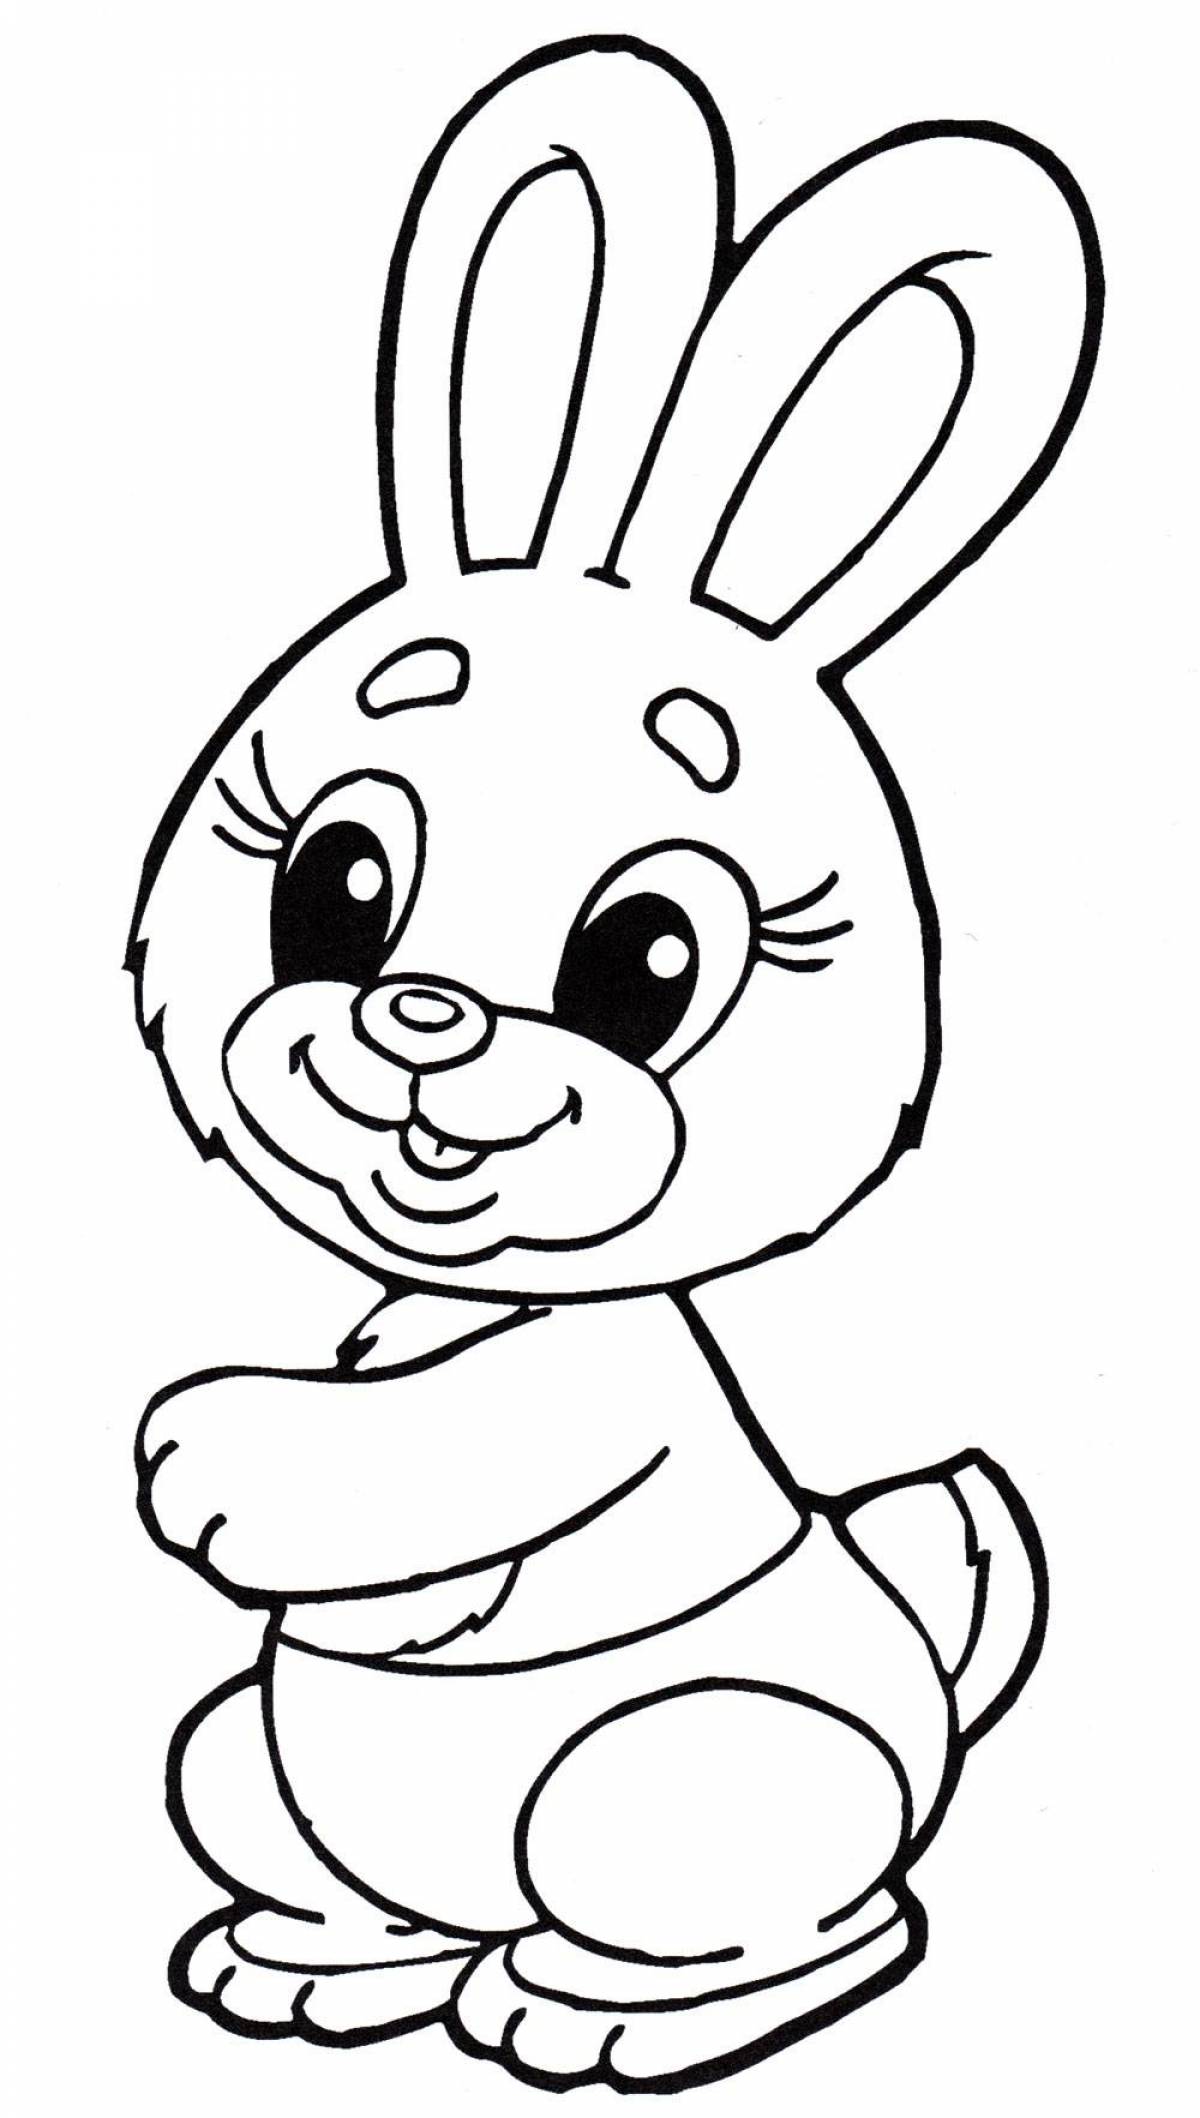 Увлекательная раскраска кролик для детей